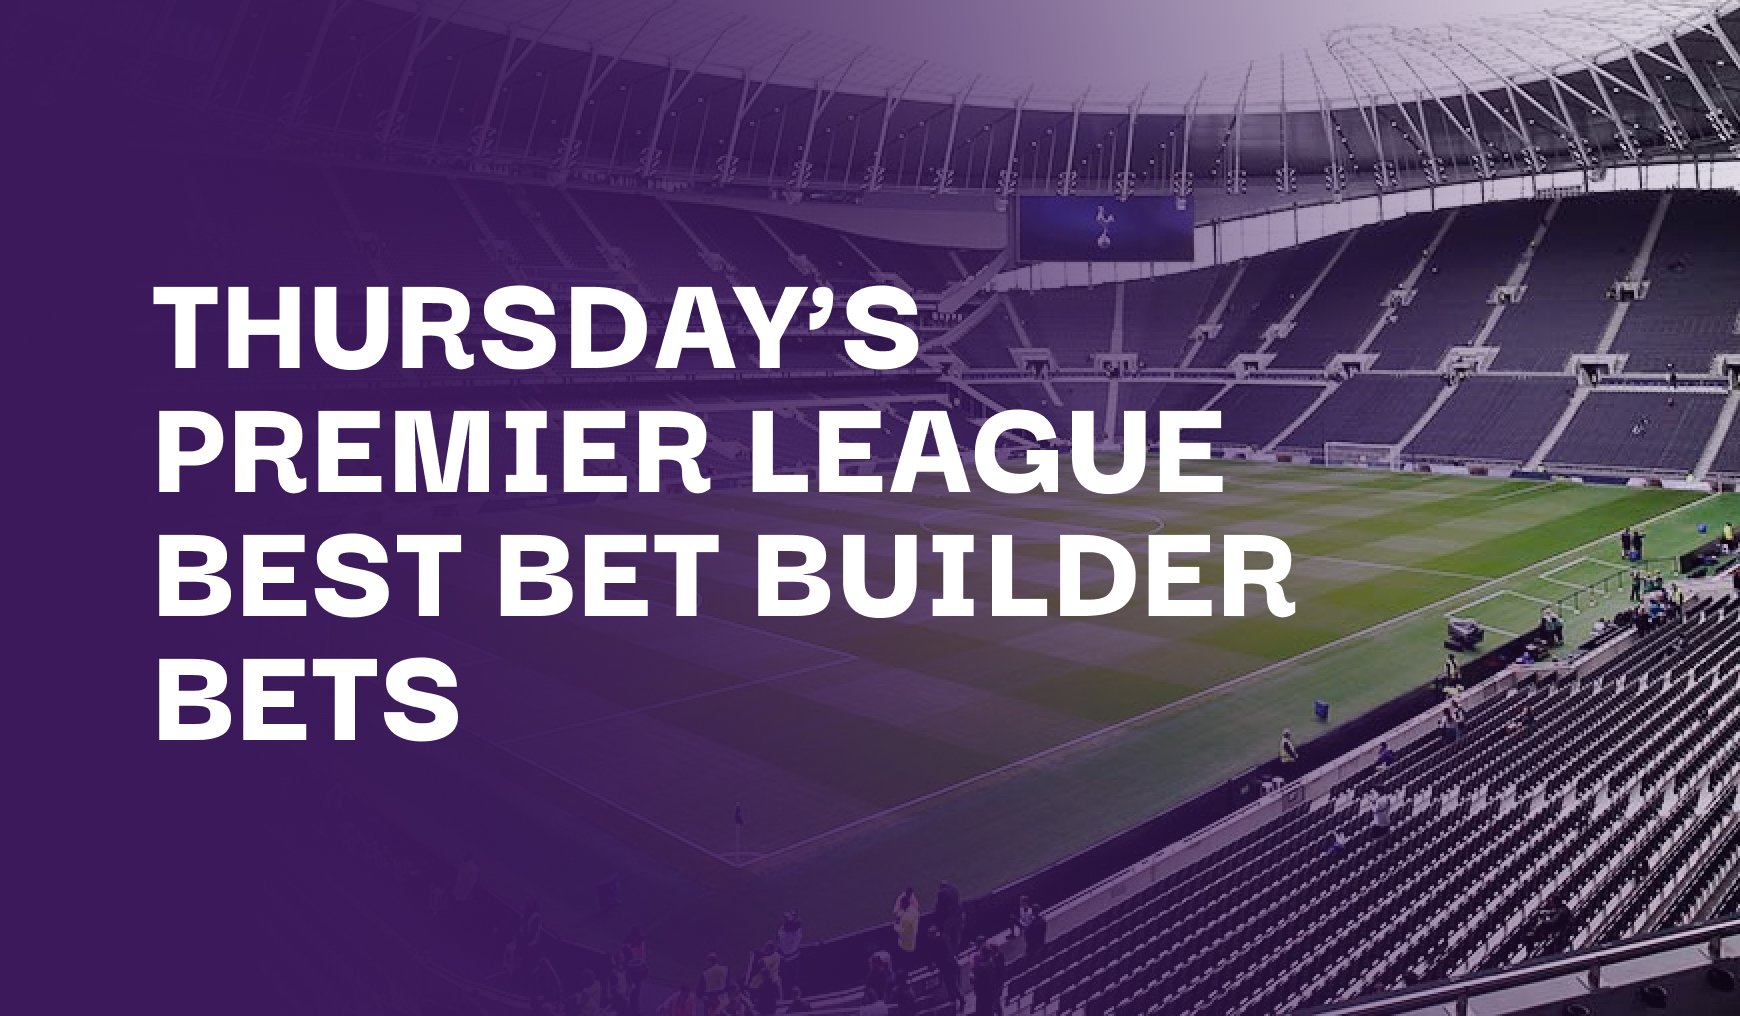 Thursday's Premier League Best Bet Builder Bets & Predictions